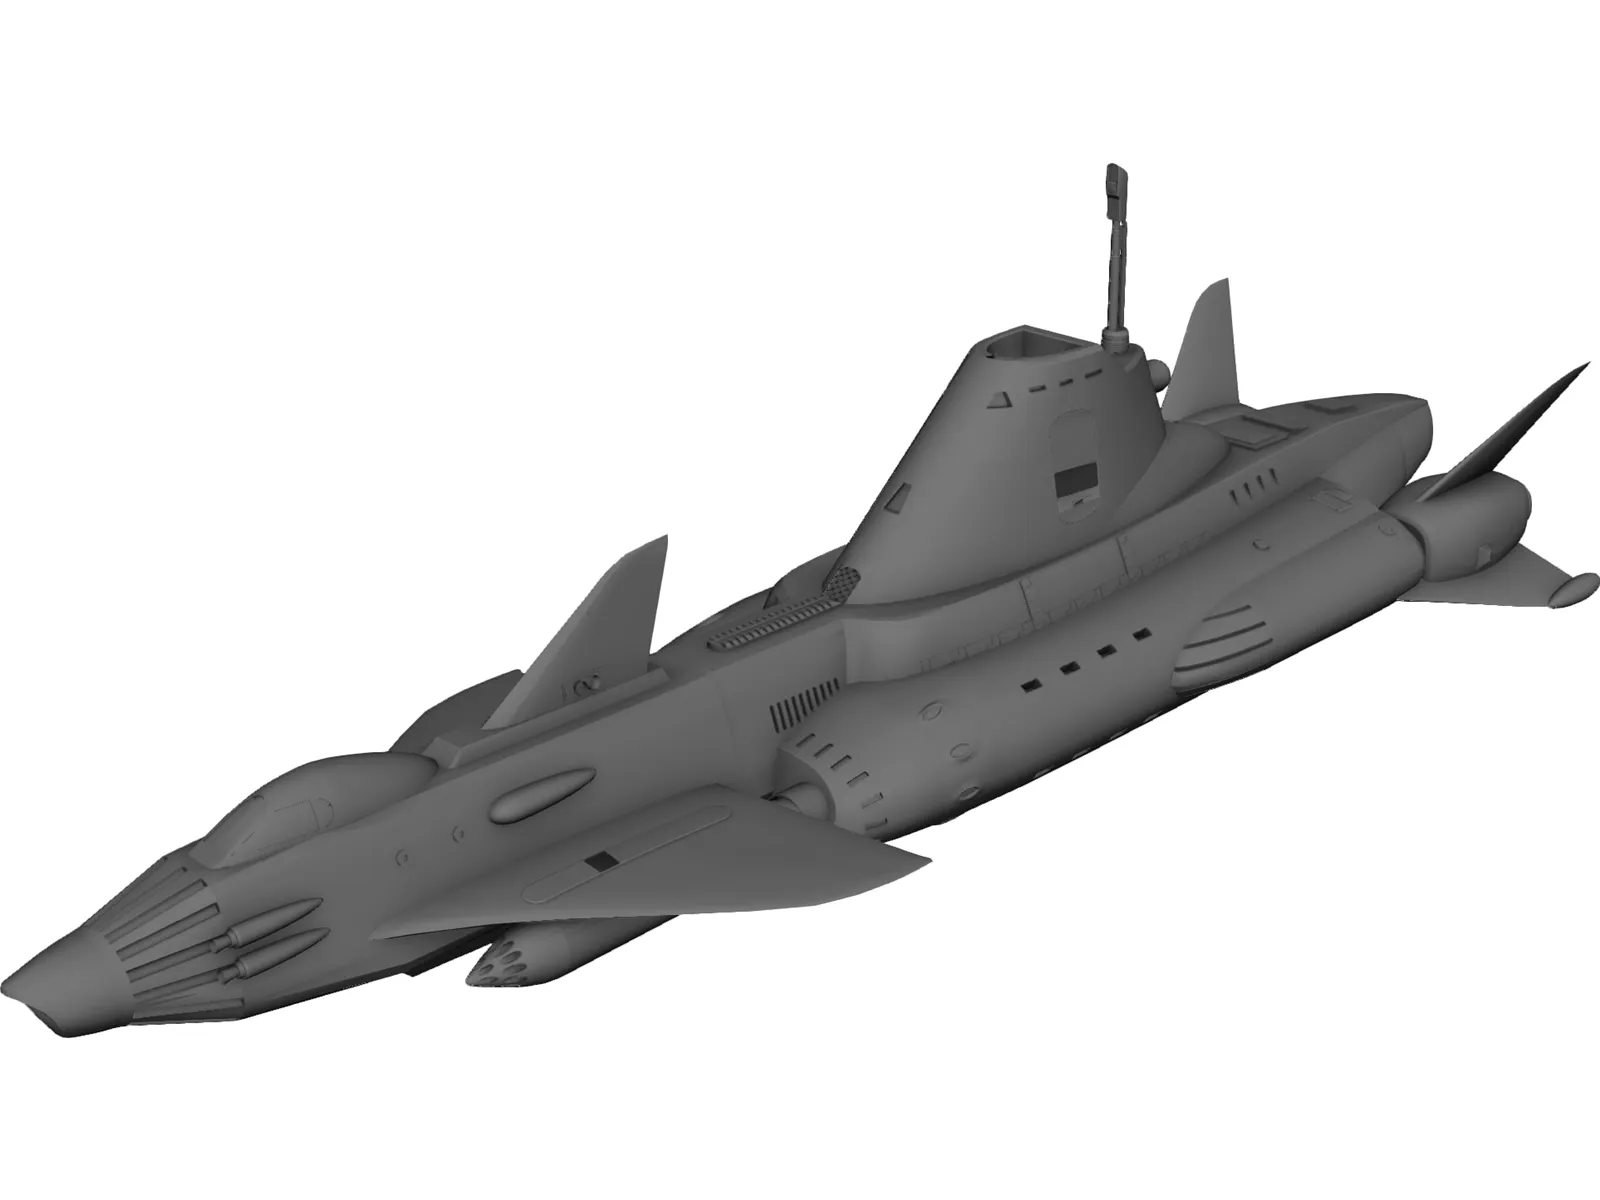 UFO Skydiver 3D Model